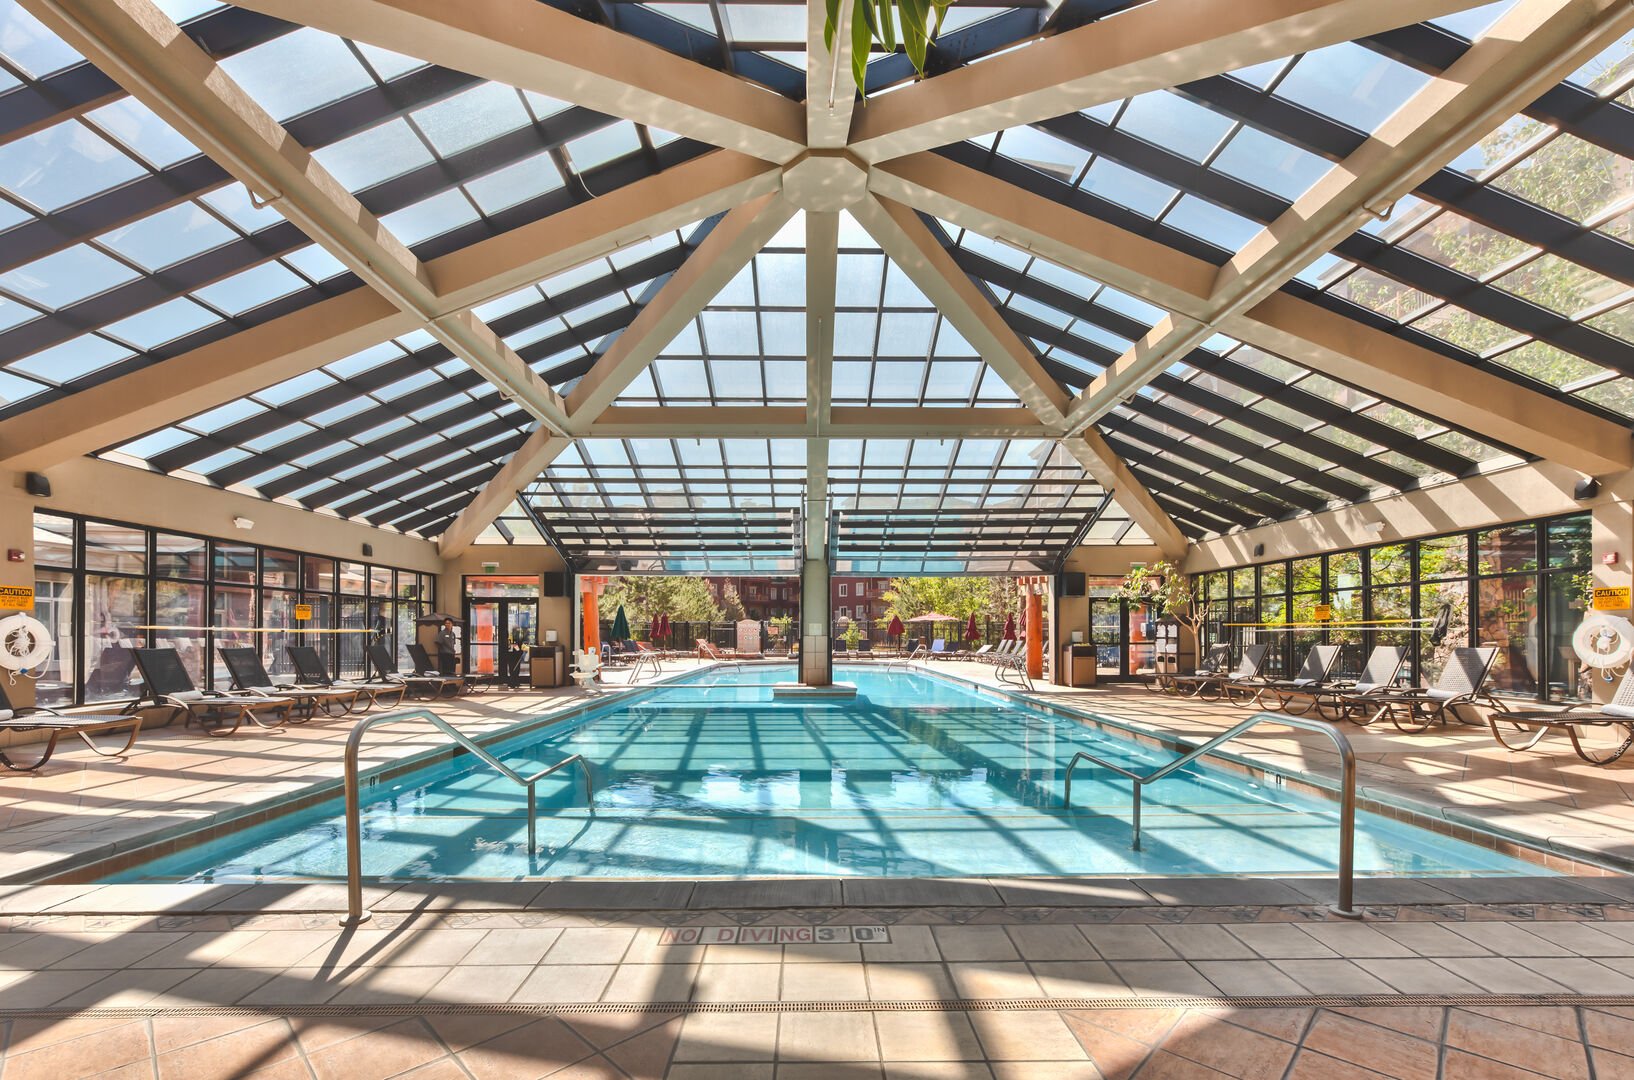 Main (indoor/outdoor) pool